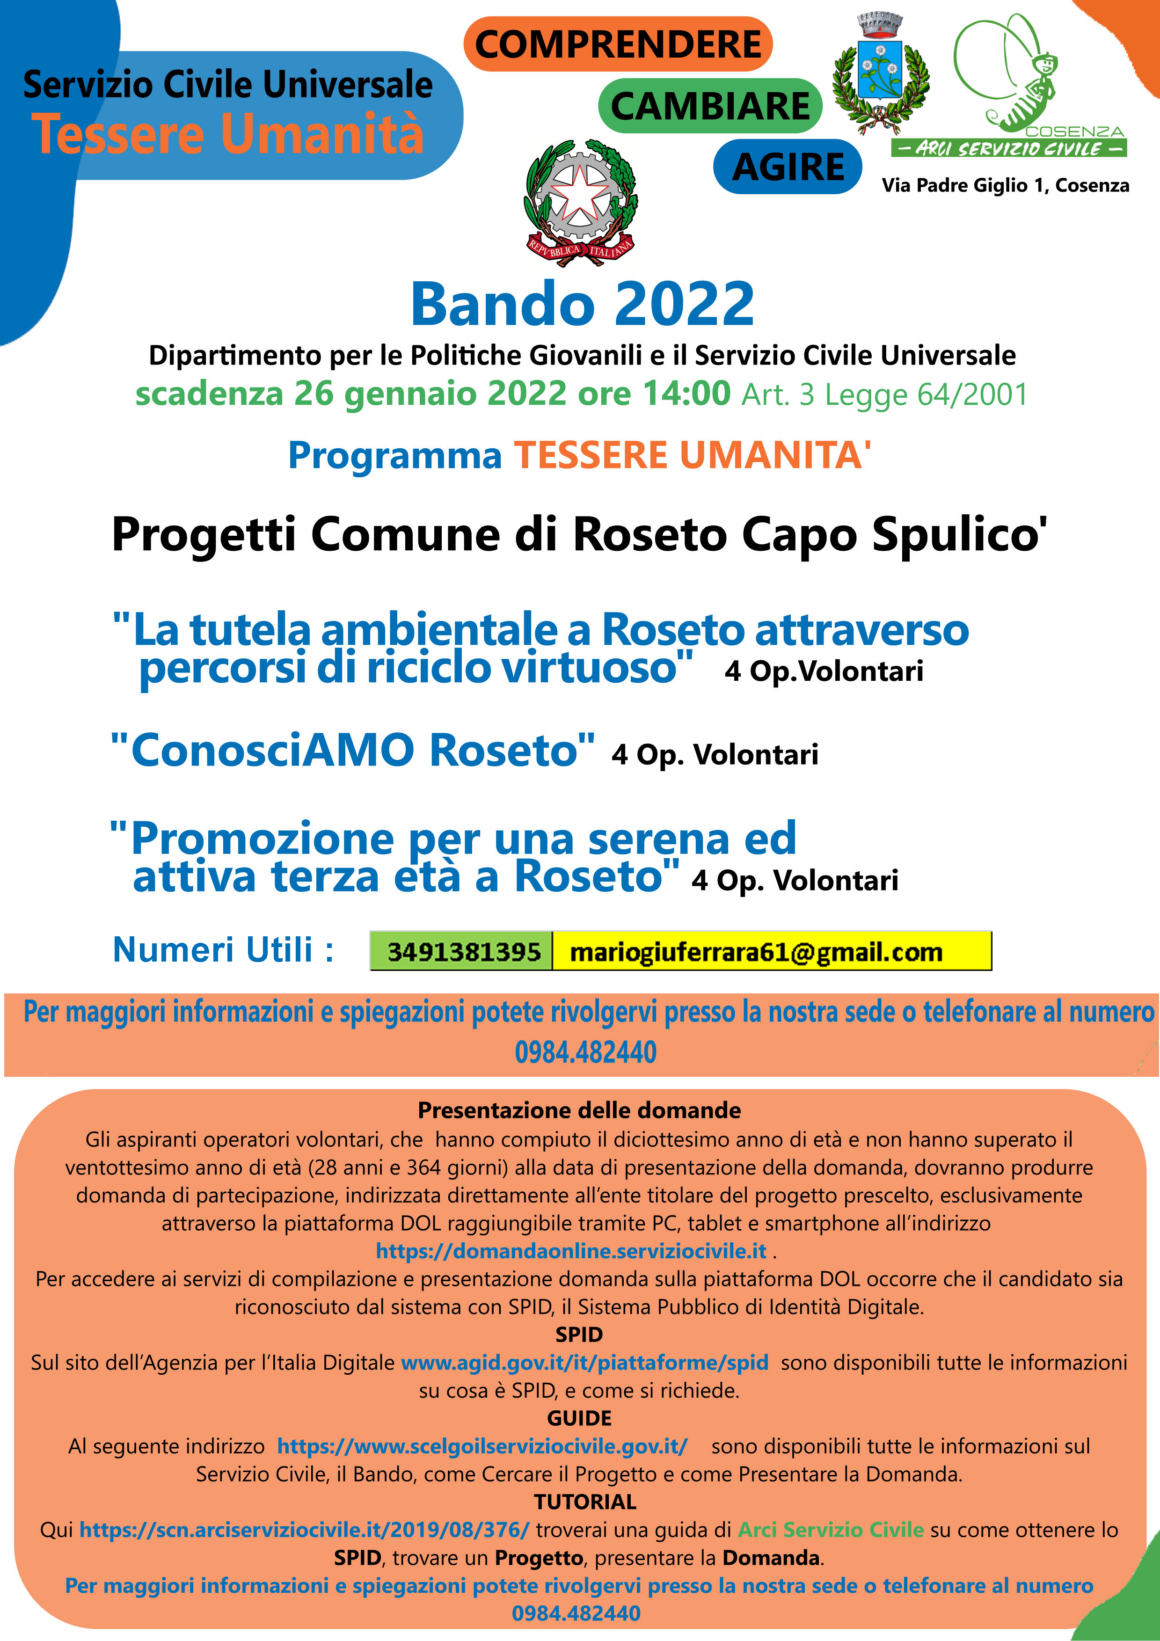 Progetti Servizio Civile 2022 – Comune di Roseto Capo Spulico